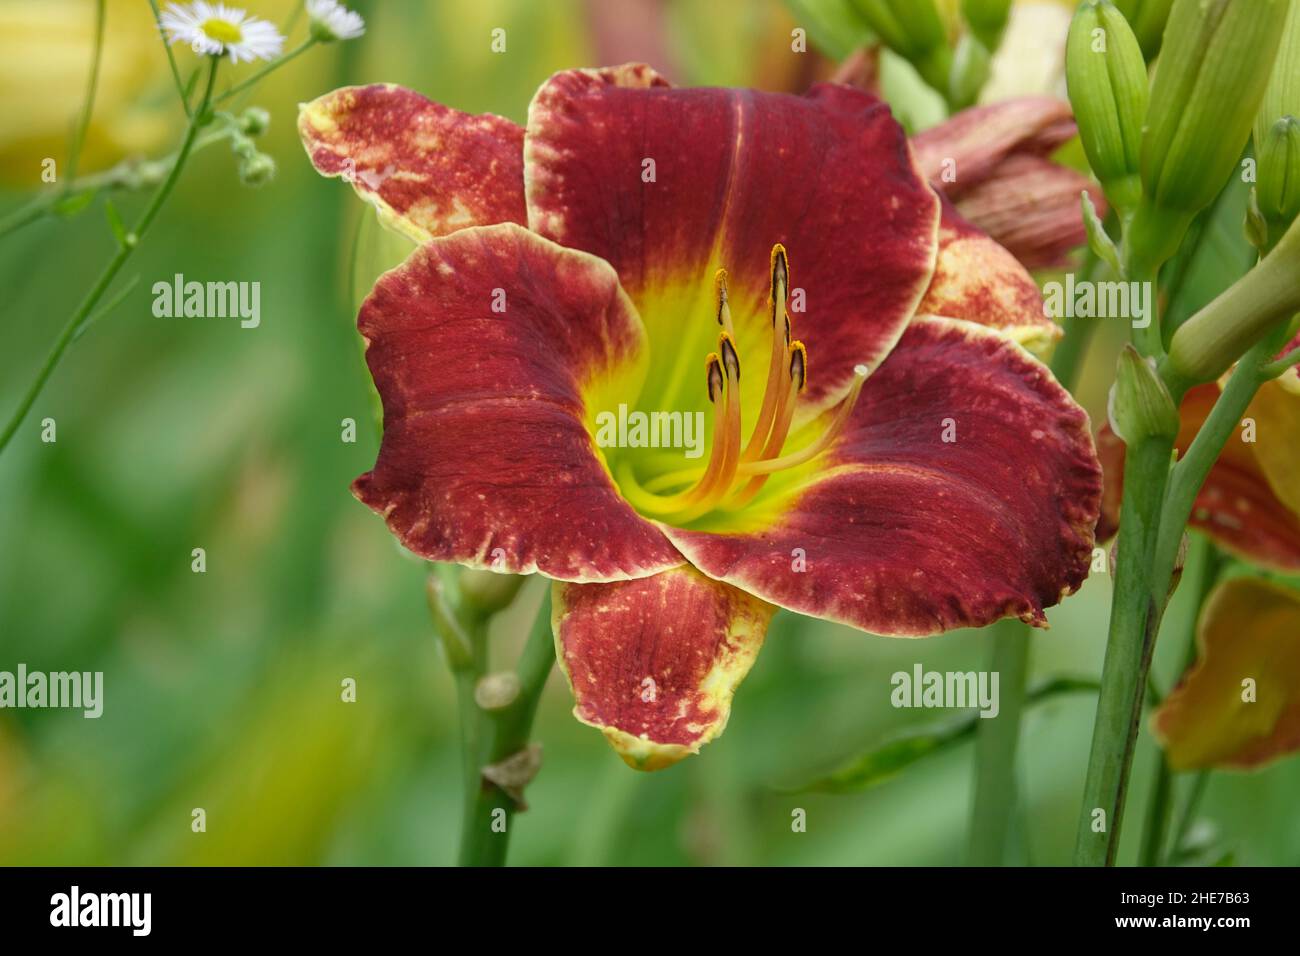 Hemerocallis Daylily Daylilies petali rossi Centro giallo zona gola dell'occhio conosciuta anche come Passione per il rosso, Ruby persiano, Ruby Stella, nel giardino di primavera Foto Stock